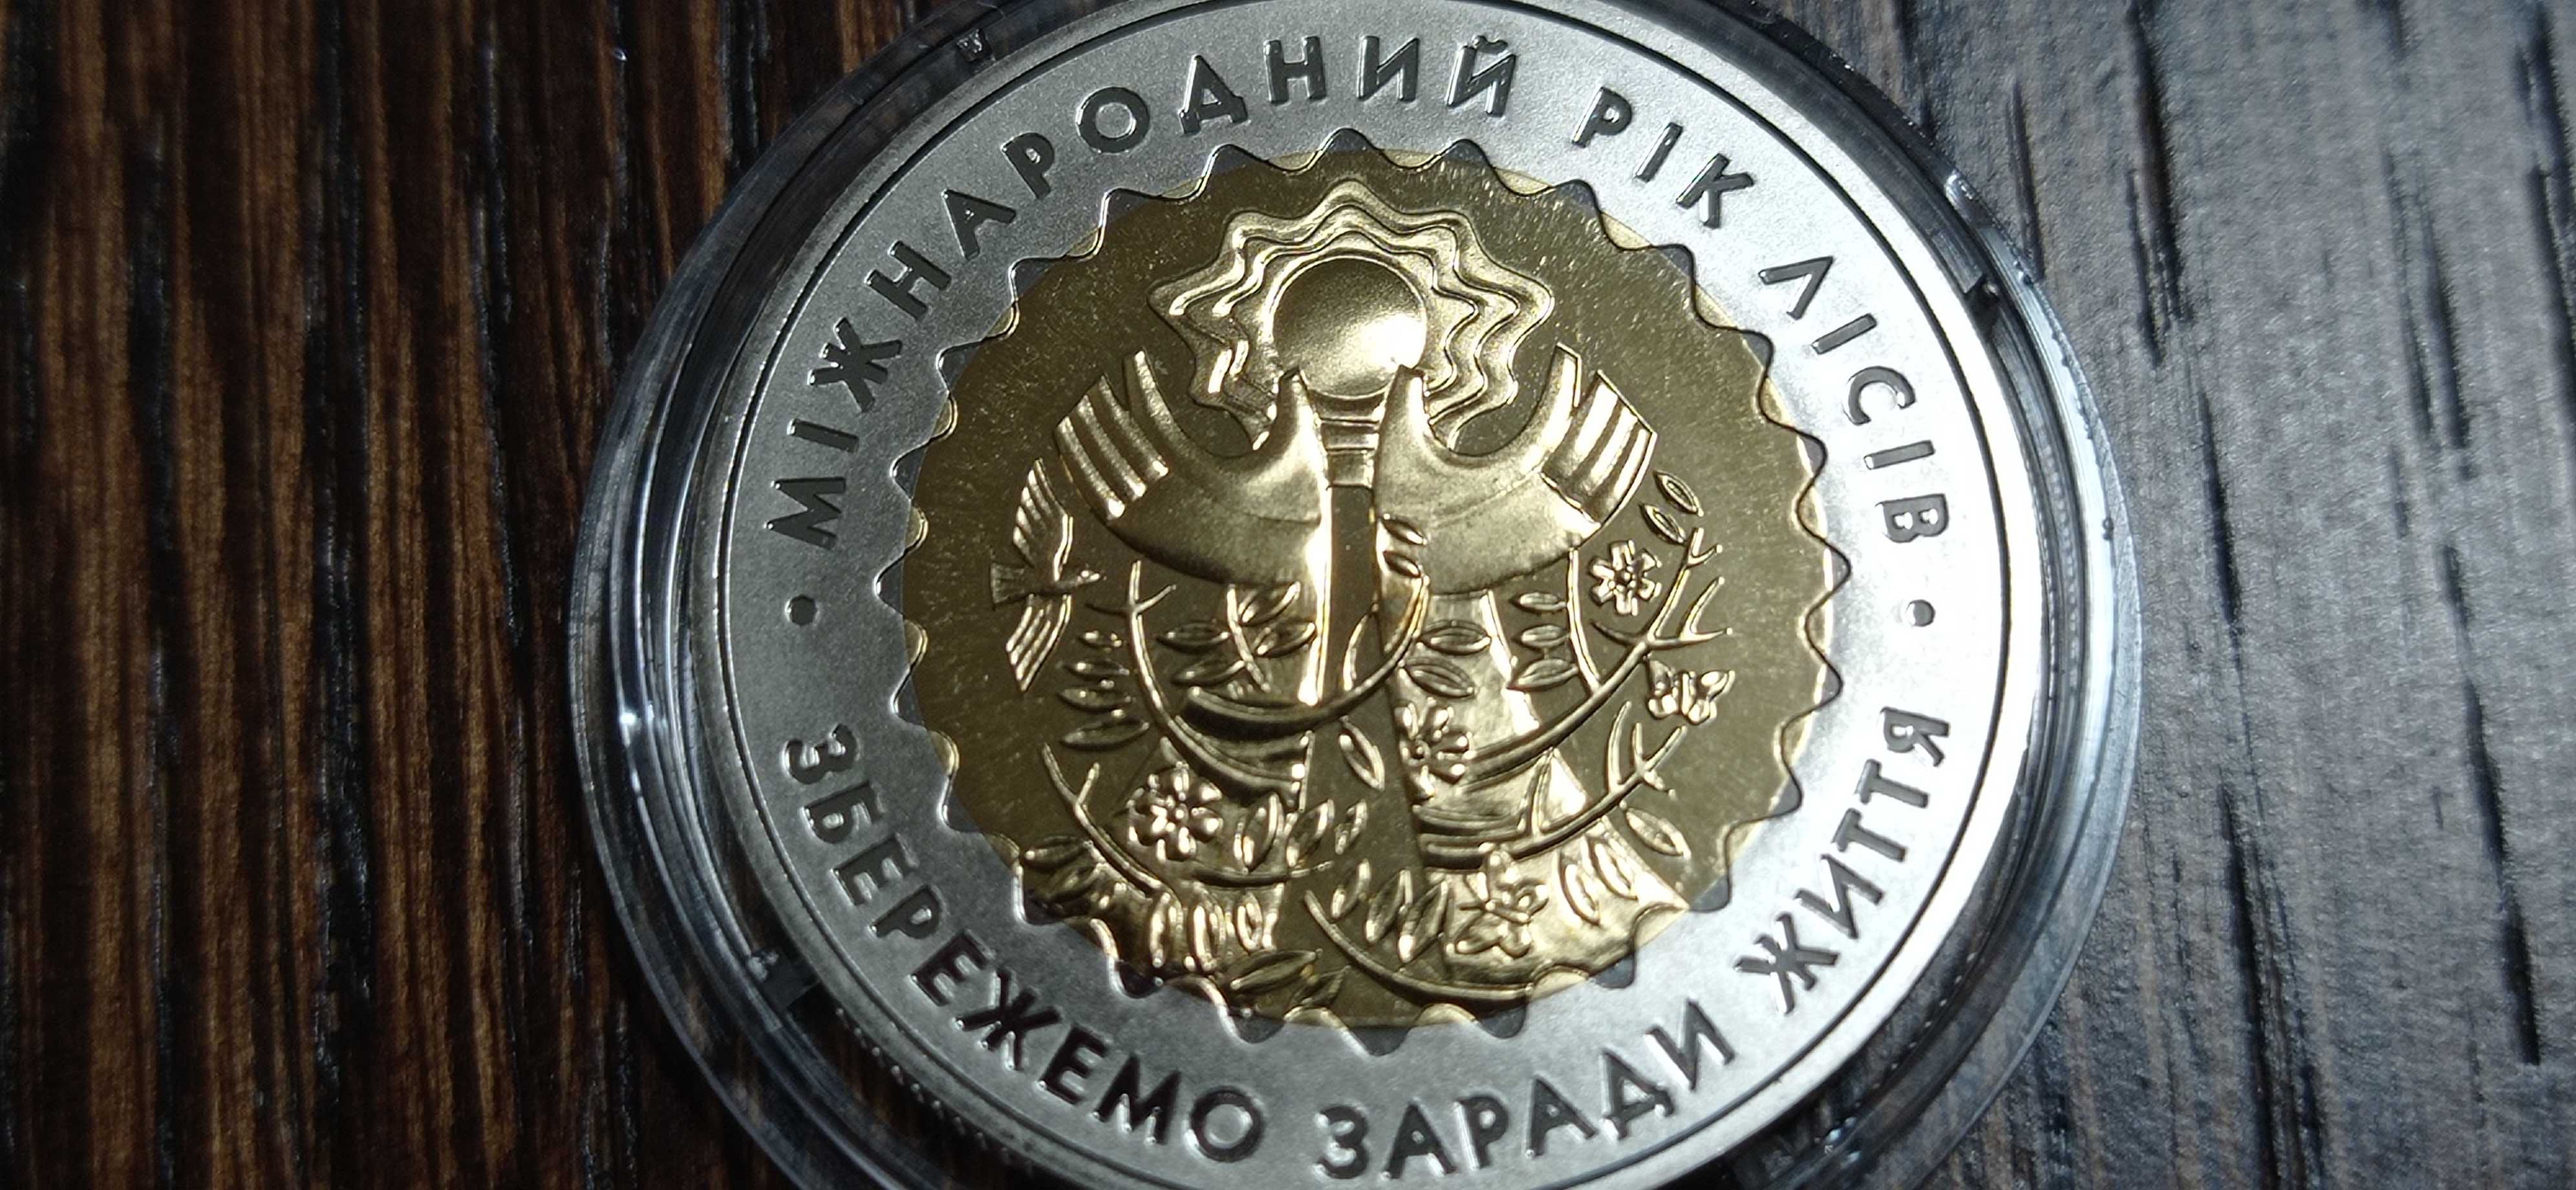 Монета пять гривен 2011 г. *Международный год лесов*.